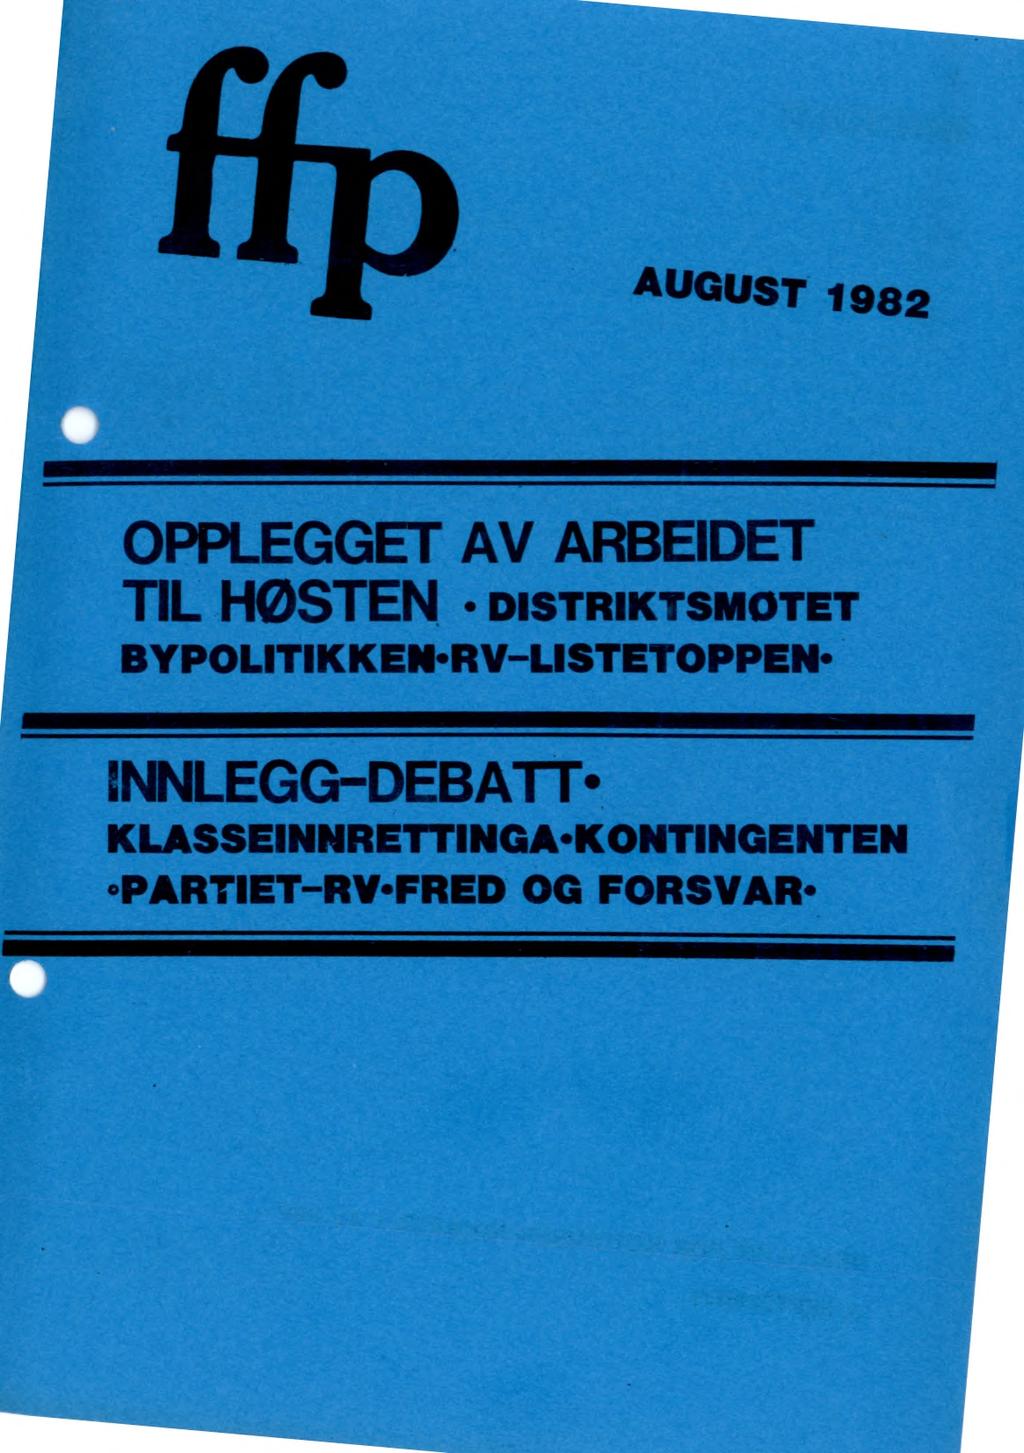 AUGUST 1982 OPPLEGGET AV ARBEIDET TIL HØSTEN DISTRIKTSMOTET BYPOLITIKKEN